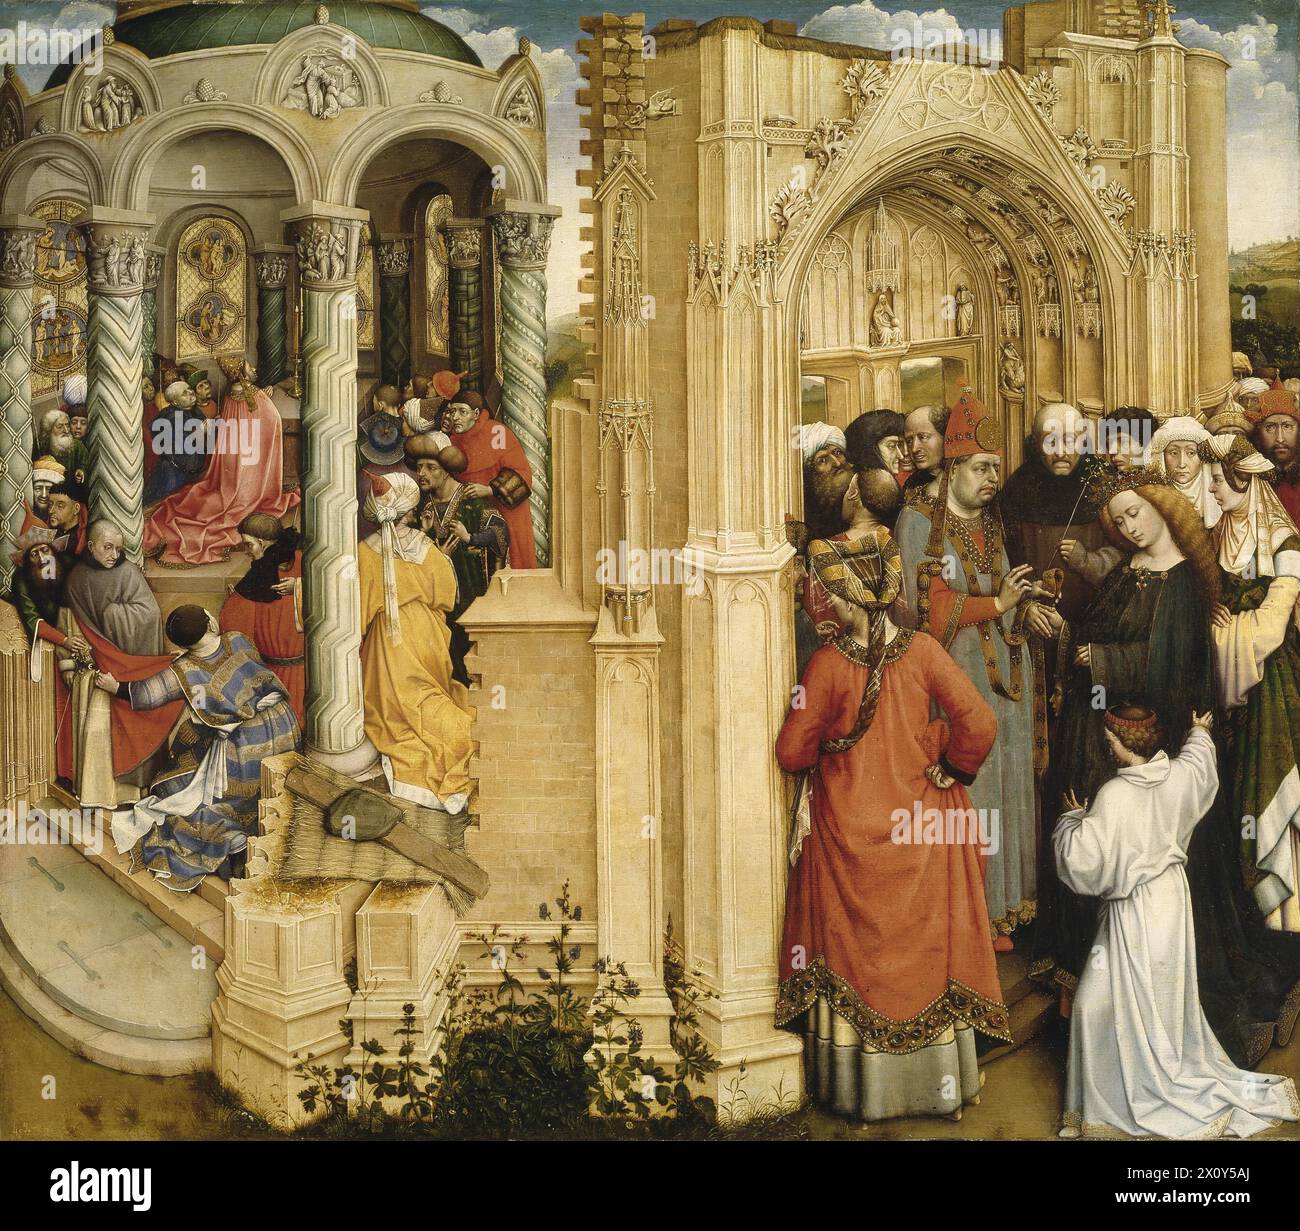 Le mariage de la Vierge, également connu sous le nom de fiançailles de la Vierge, est une peinture à l'huile sur chêne réalisée entre 1420 et 1430 par Robert Campin. Banque D'Images